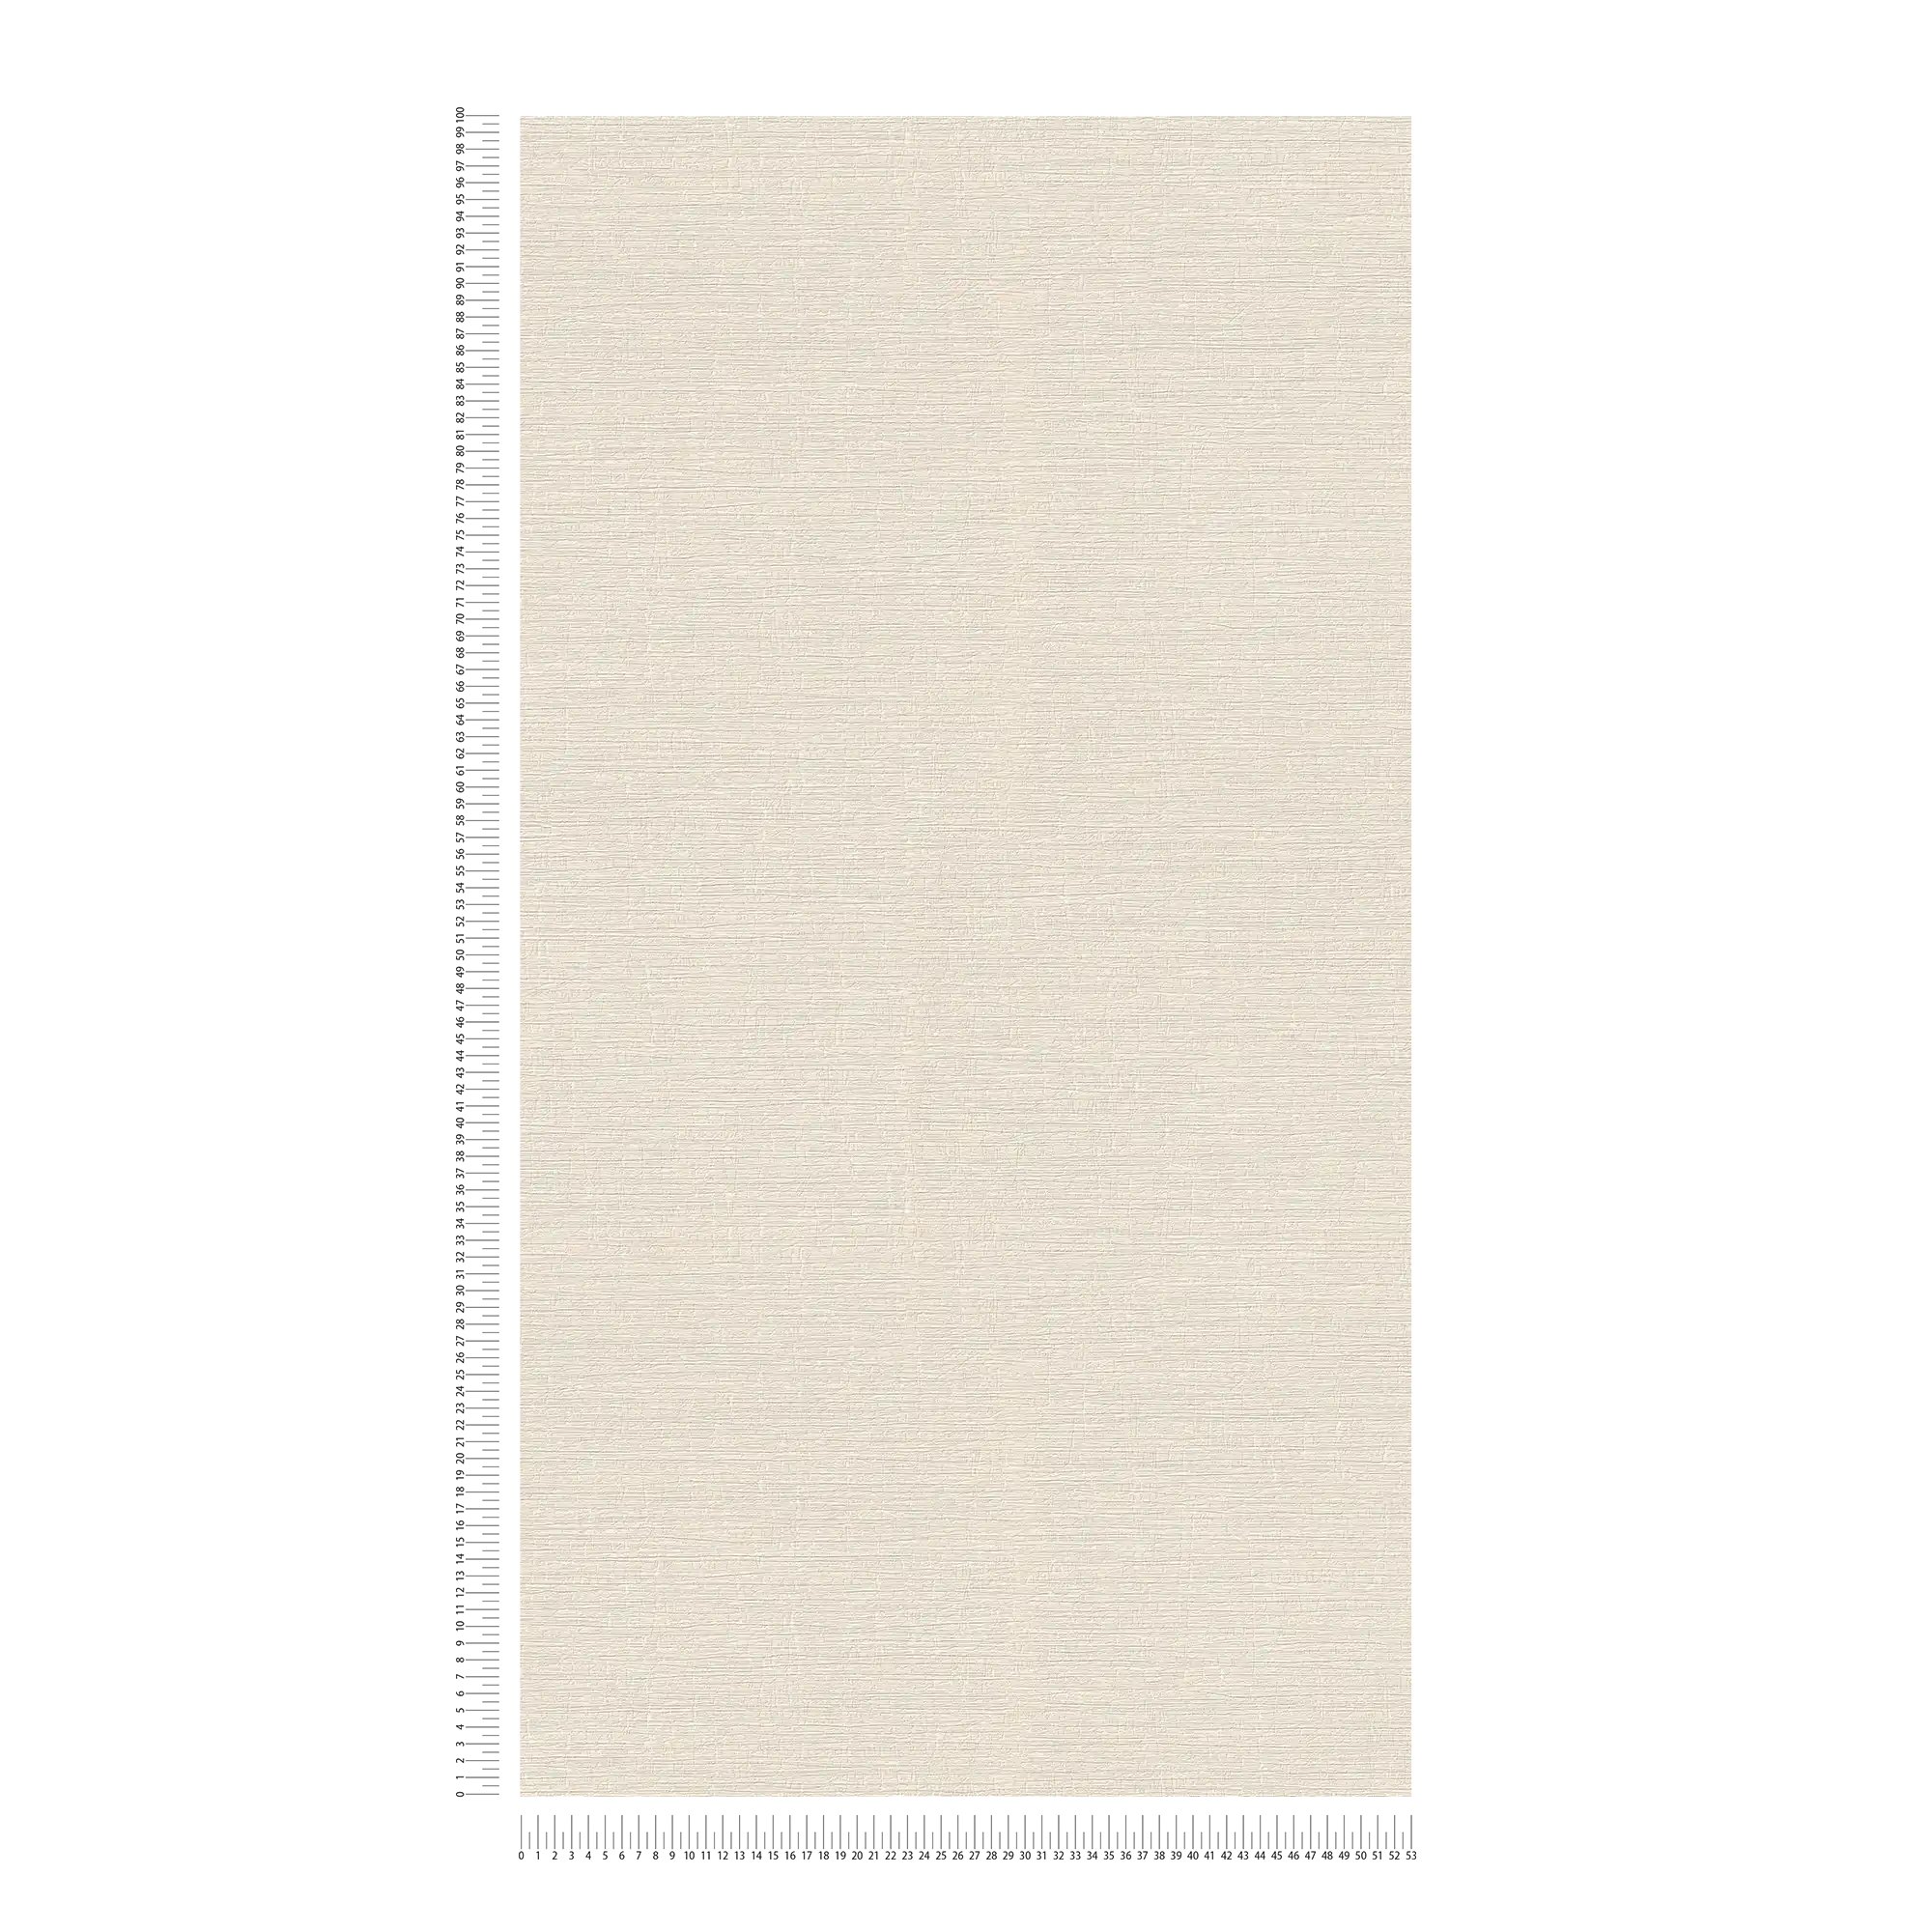             Licht gestructureerd eenheidsbehang in textiellook - beige, crème
        